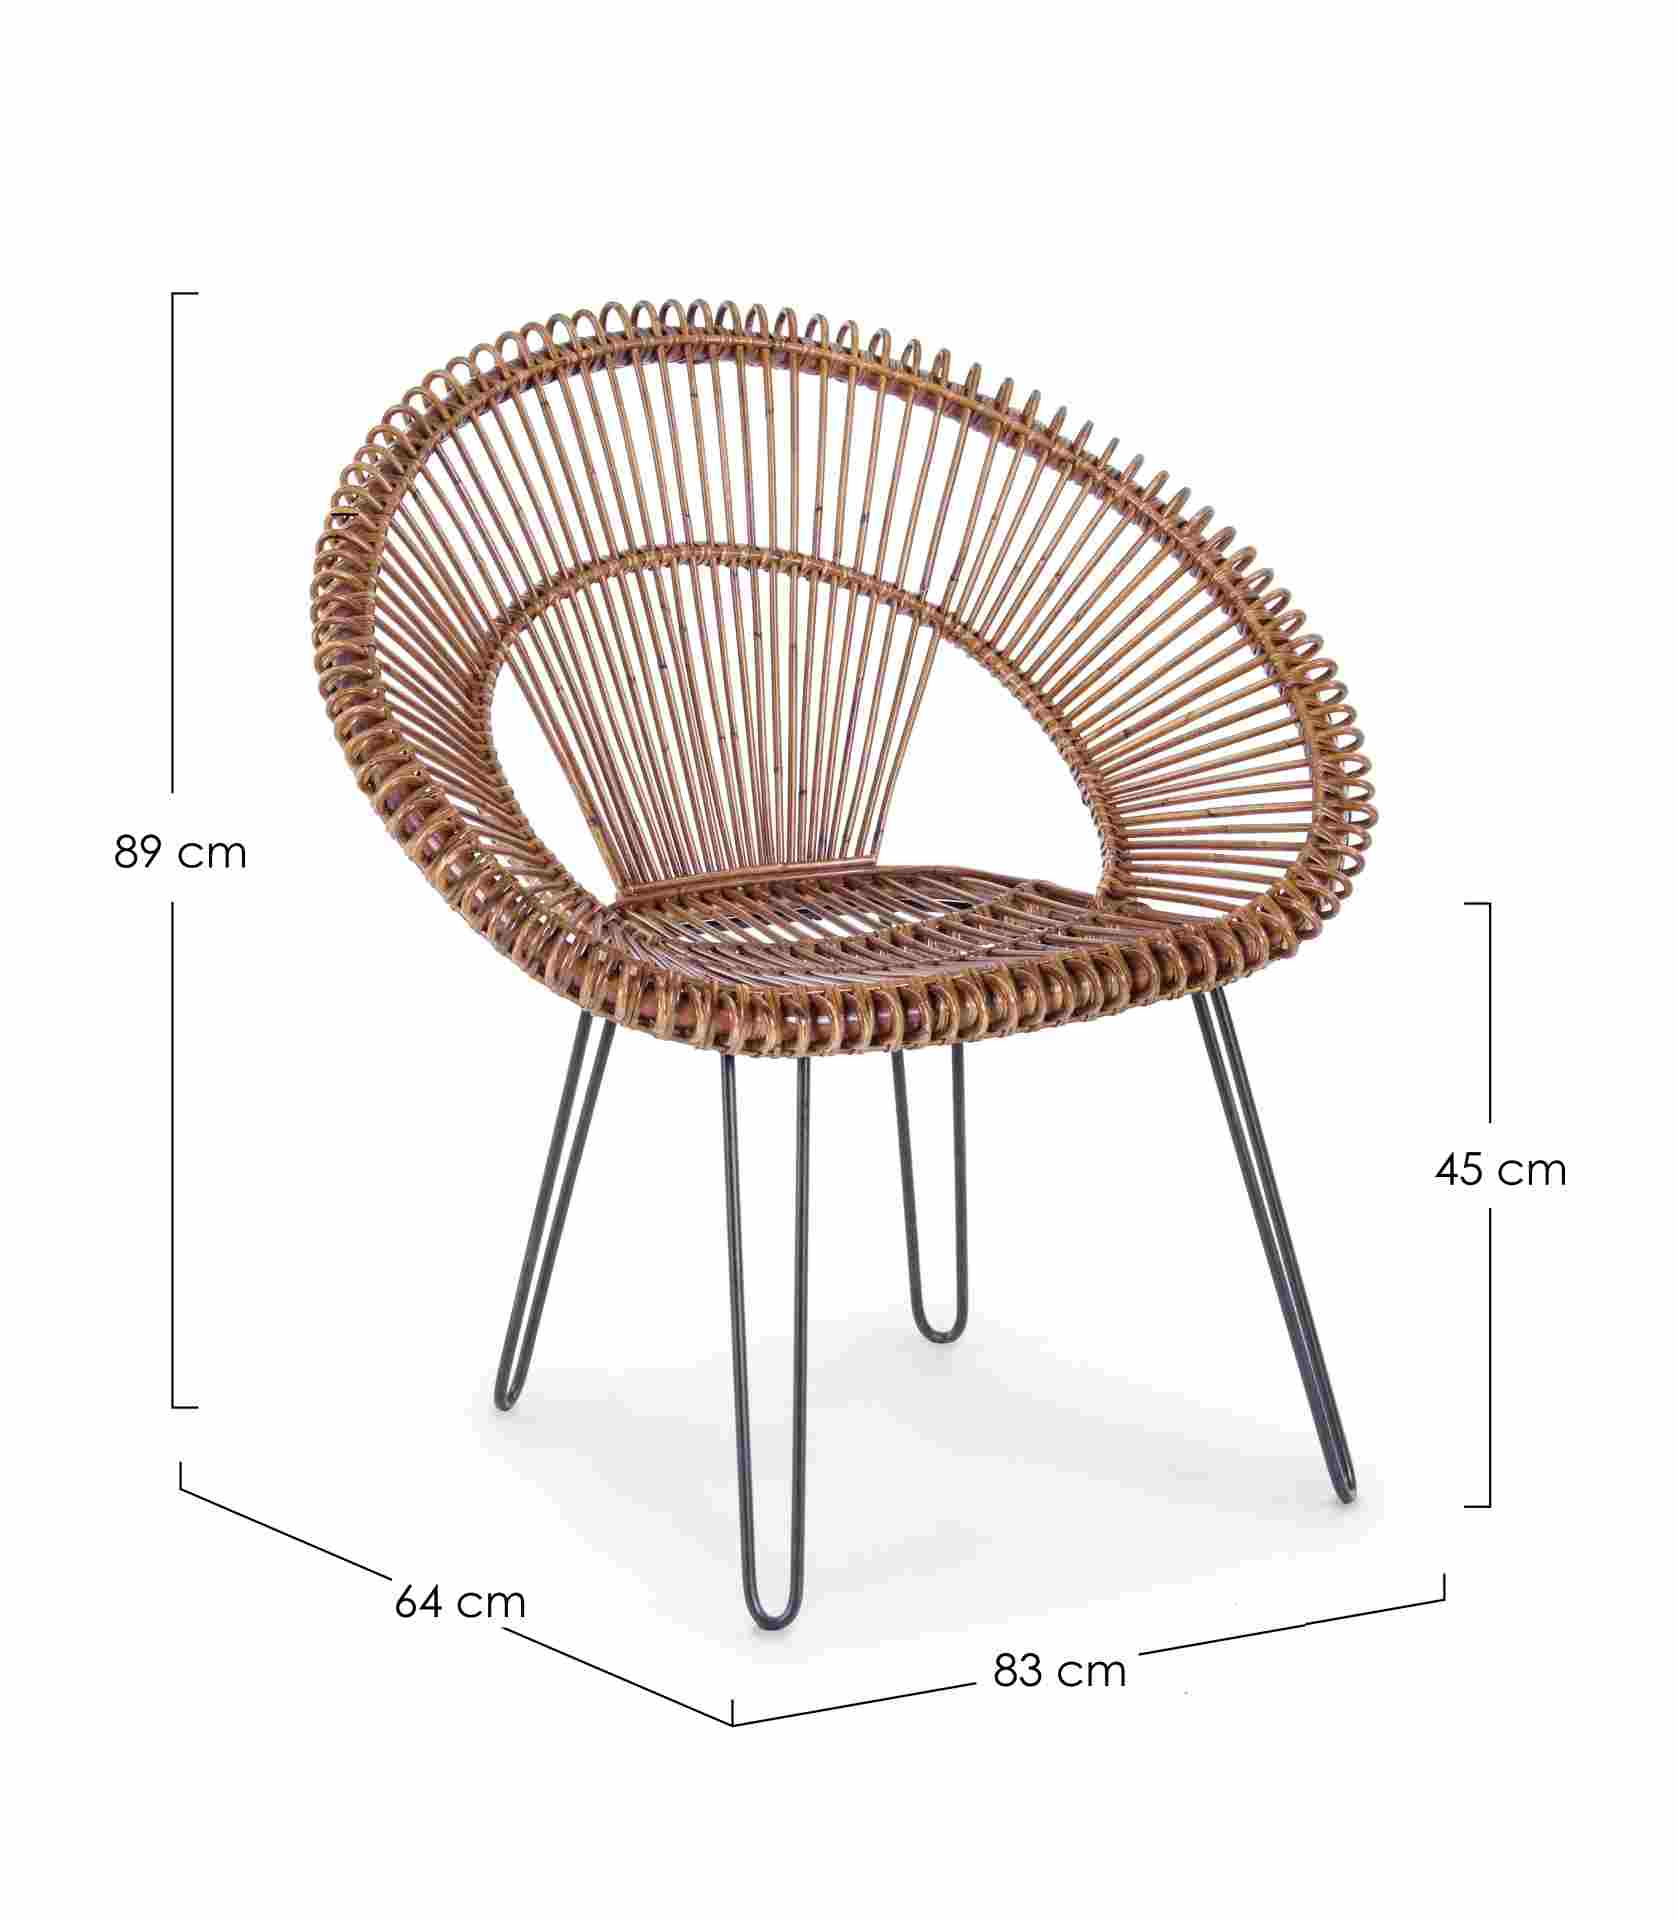 Der Sessel Esteban überzeugt mit seinem klassischen Design. Gefertigt wurde er aus Rattan, welches einen braunen Farbton besitzt. Das Gestell ist aus Metall und hat eine schwarze Farbe. Der Sessel besitzt eine Sitzhöhe von 45 cm. Die Breite beträgt 83 cm.